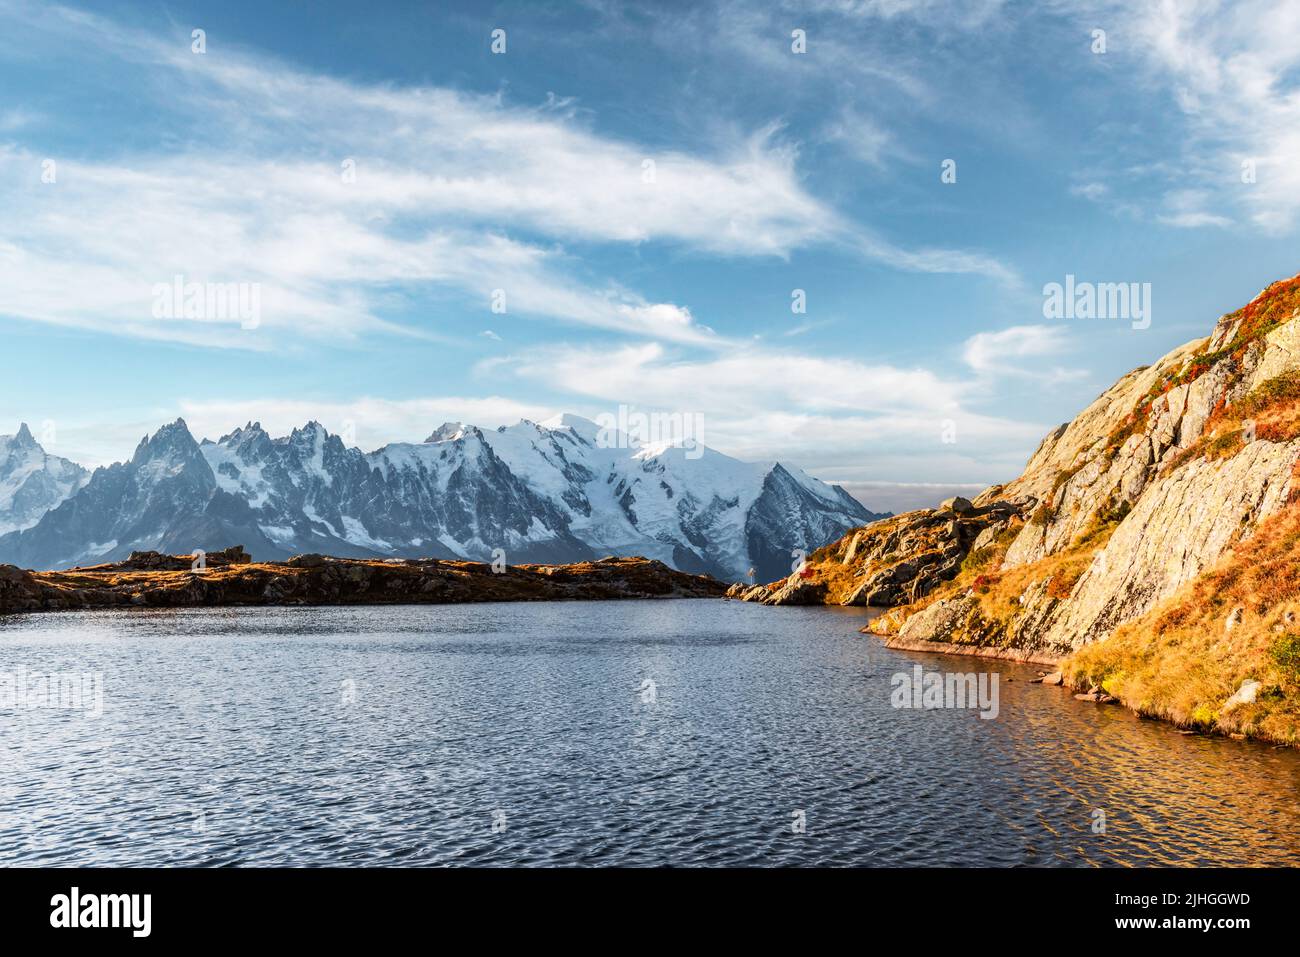 Unglaubliche Aussicht auf klares Wasser und Himmel Reflexion auf dem See von Cesery (Lac De Ceserys) in den französischen Alpen. Die Berge des Monte Bianco liegen im Hintergrund. Landschaftsfotografie, Chamonix Stockfoto